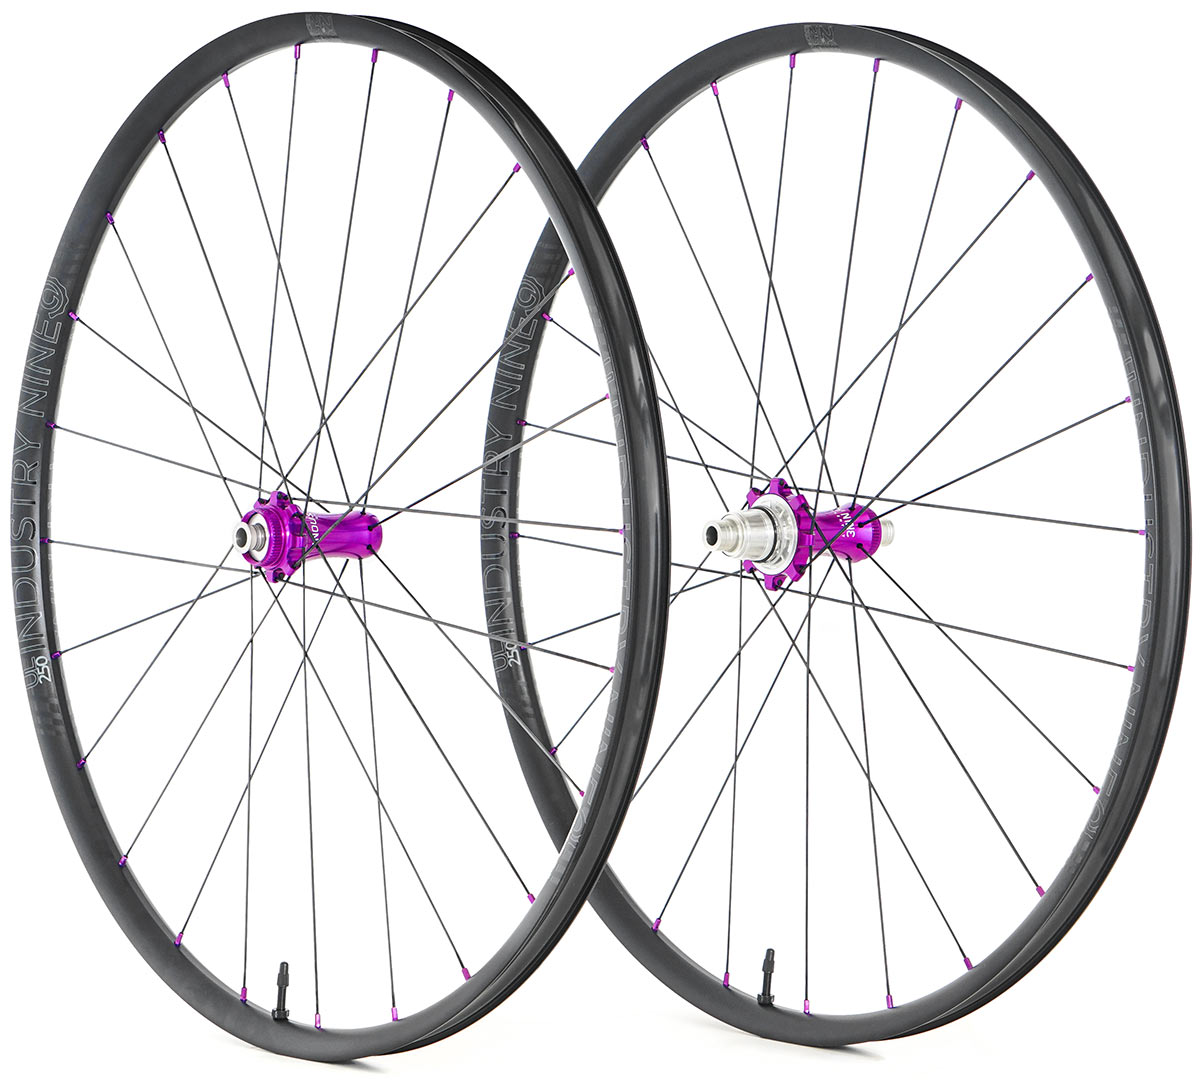 industry nine UL250 CX lightweight gravel bike wheels